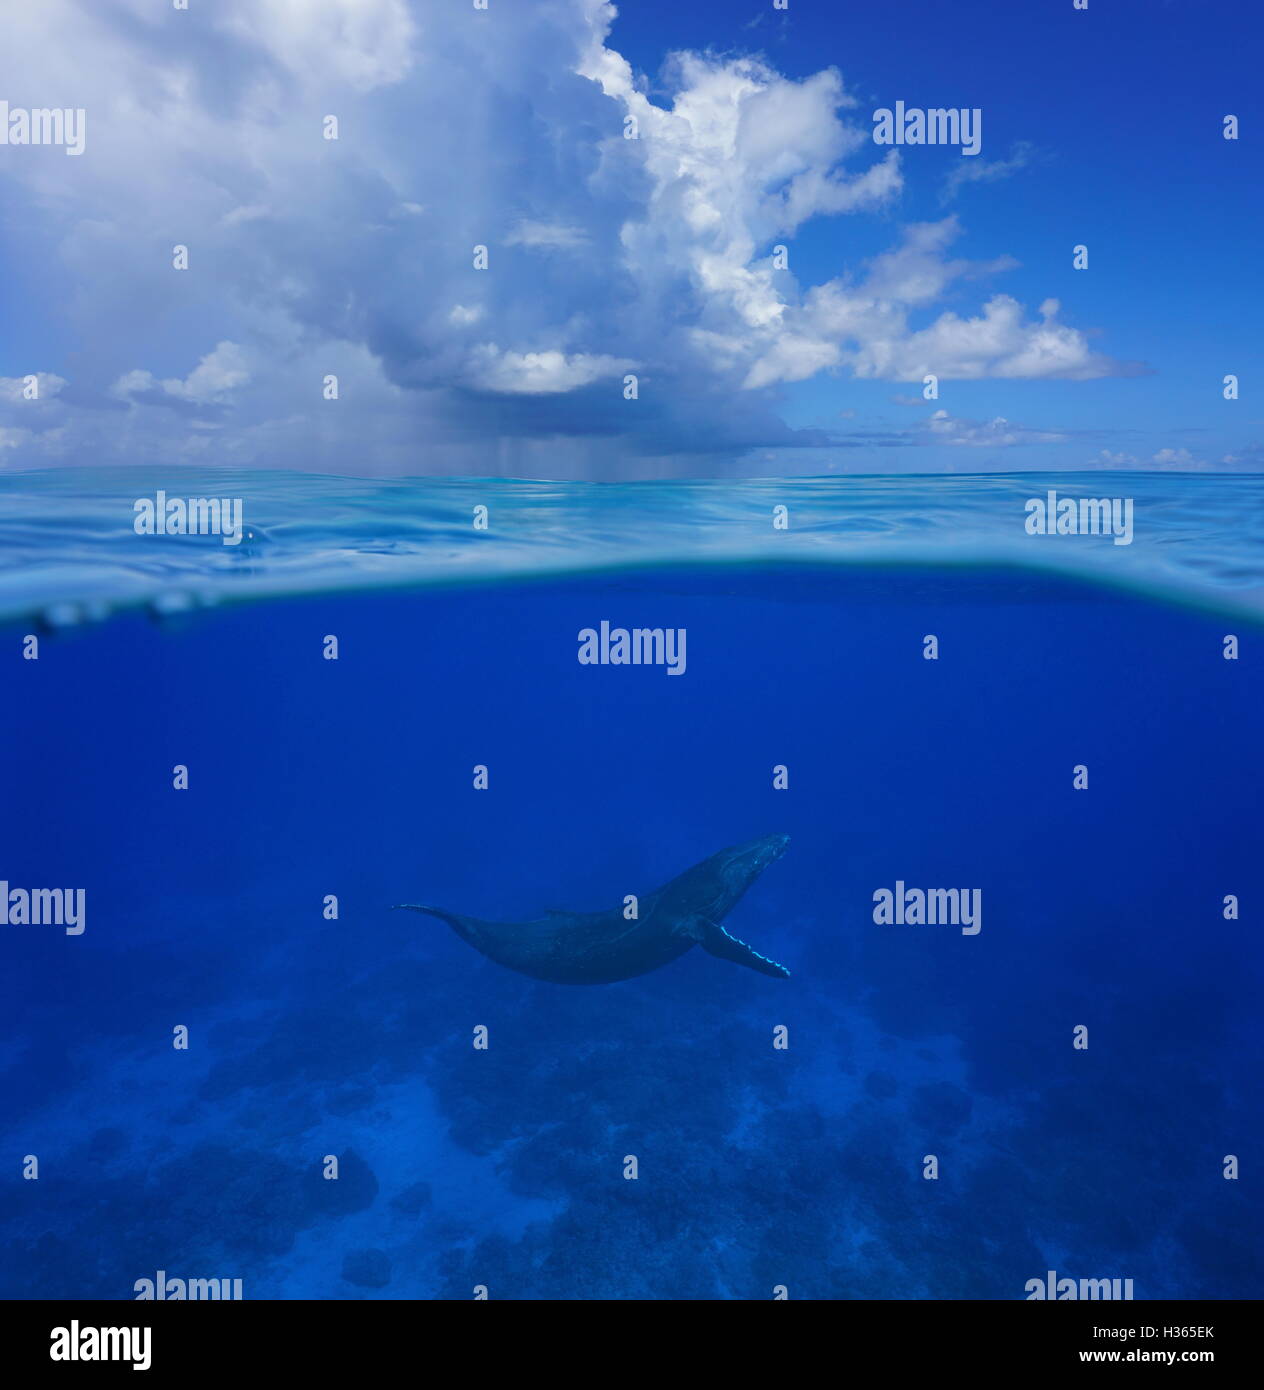 Al di sopra e al di sotto della superficie del mare, un Humpback Whale subacquei con nuvoloso cielo blu divisa dalla linea di galleggiamento, oceano pacifico, Rurutu island Foto Stock